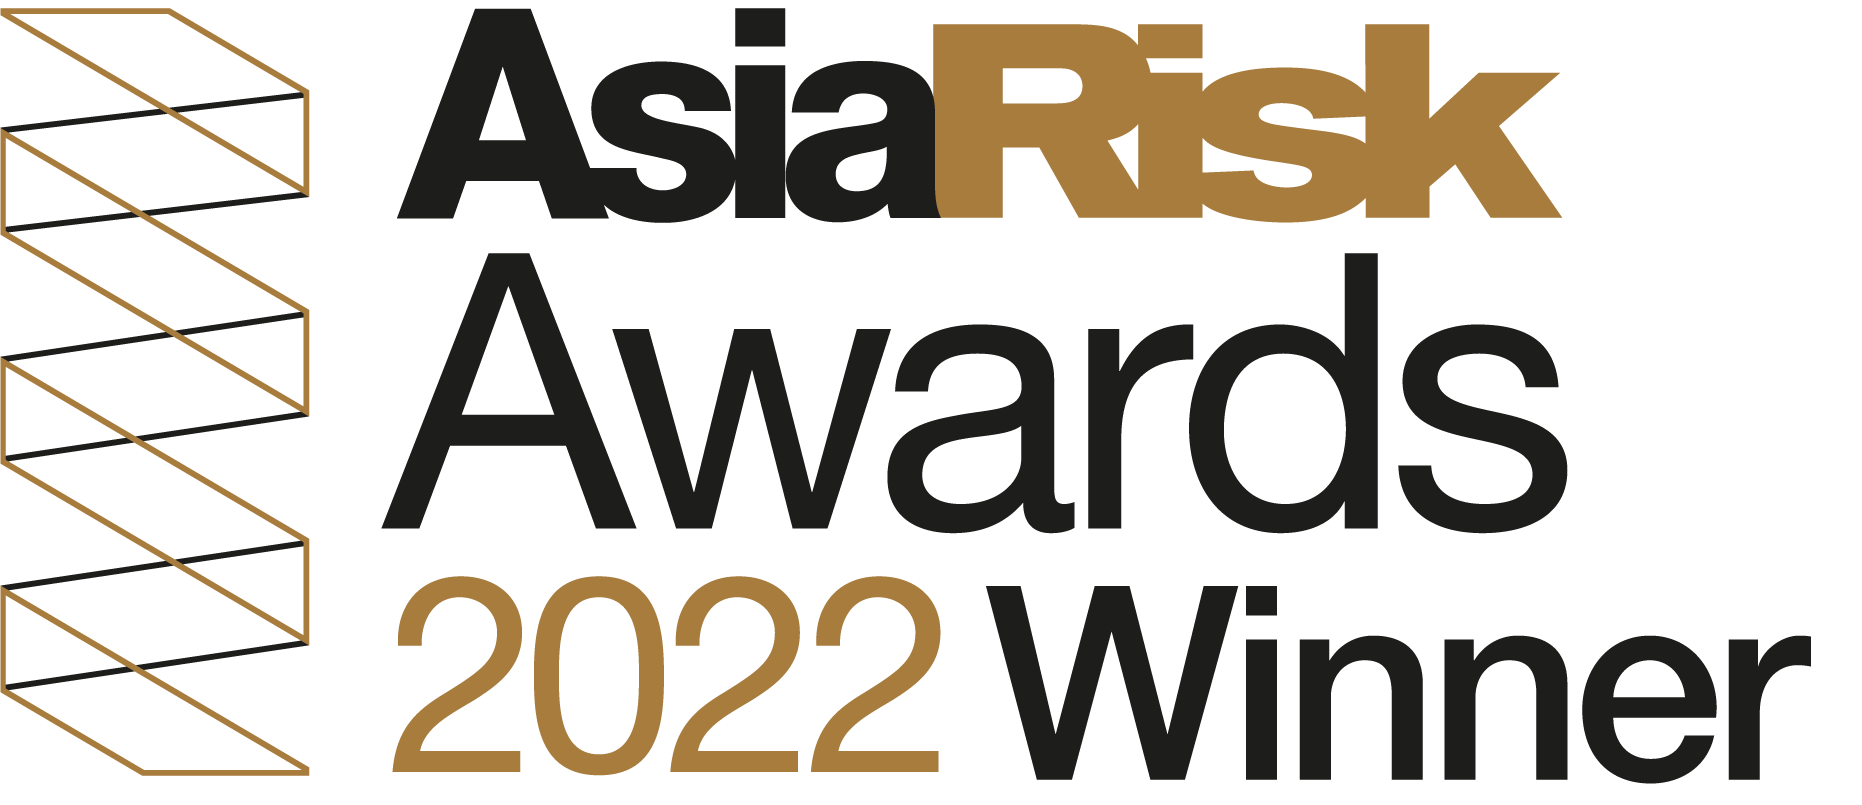 Asia Risk Technology Awards 2022 Murex